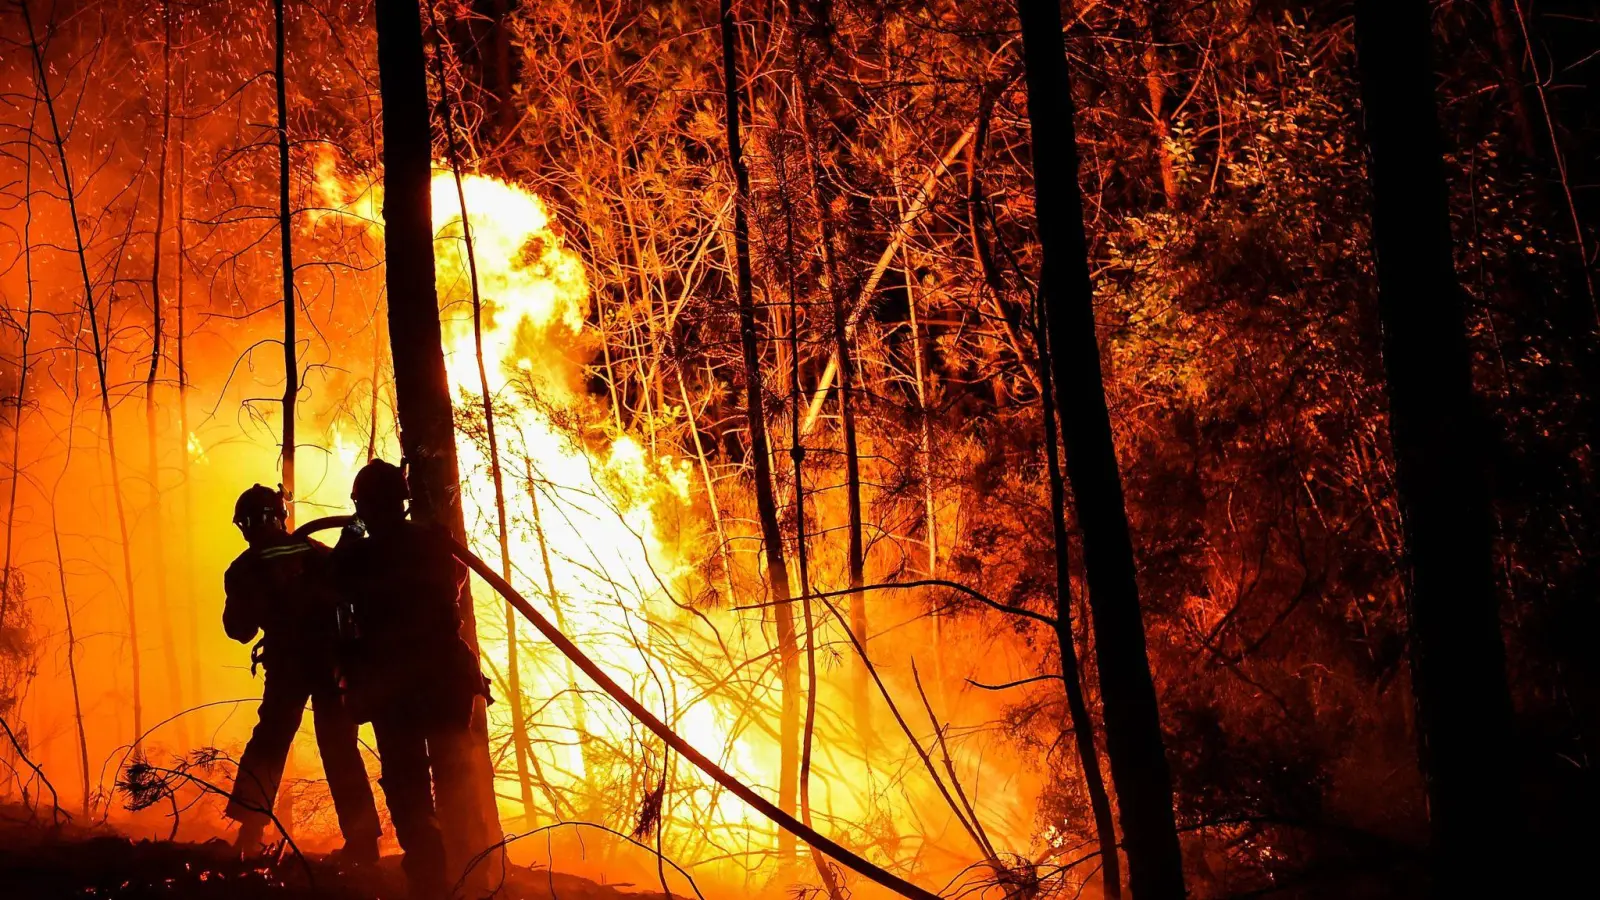 Feuerwehrleute bekämpfen einen Waldbrand. Angesichts der aktuellen Gefahren wegen der Trockenheit, hat die Regierung für das Wochenende Beobachtungsflüge angeordnet. (Symbolbild: Sylvain Thomas/AFP/dpa)